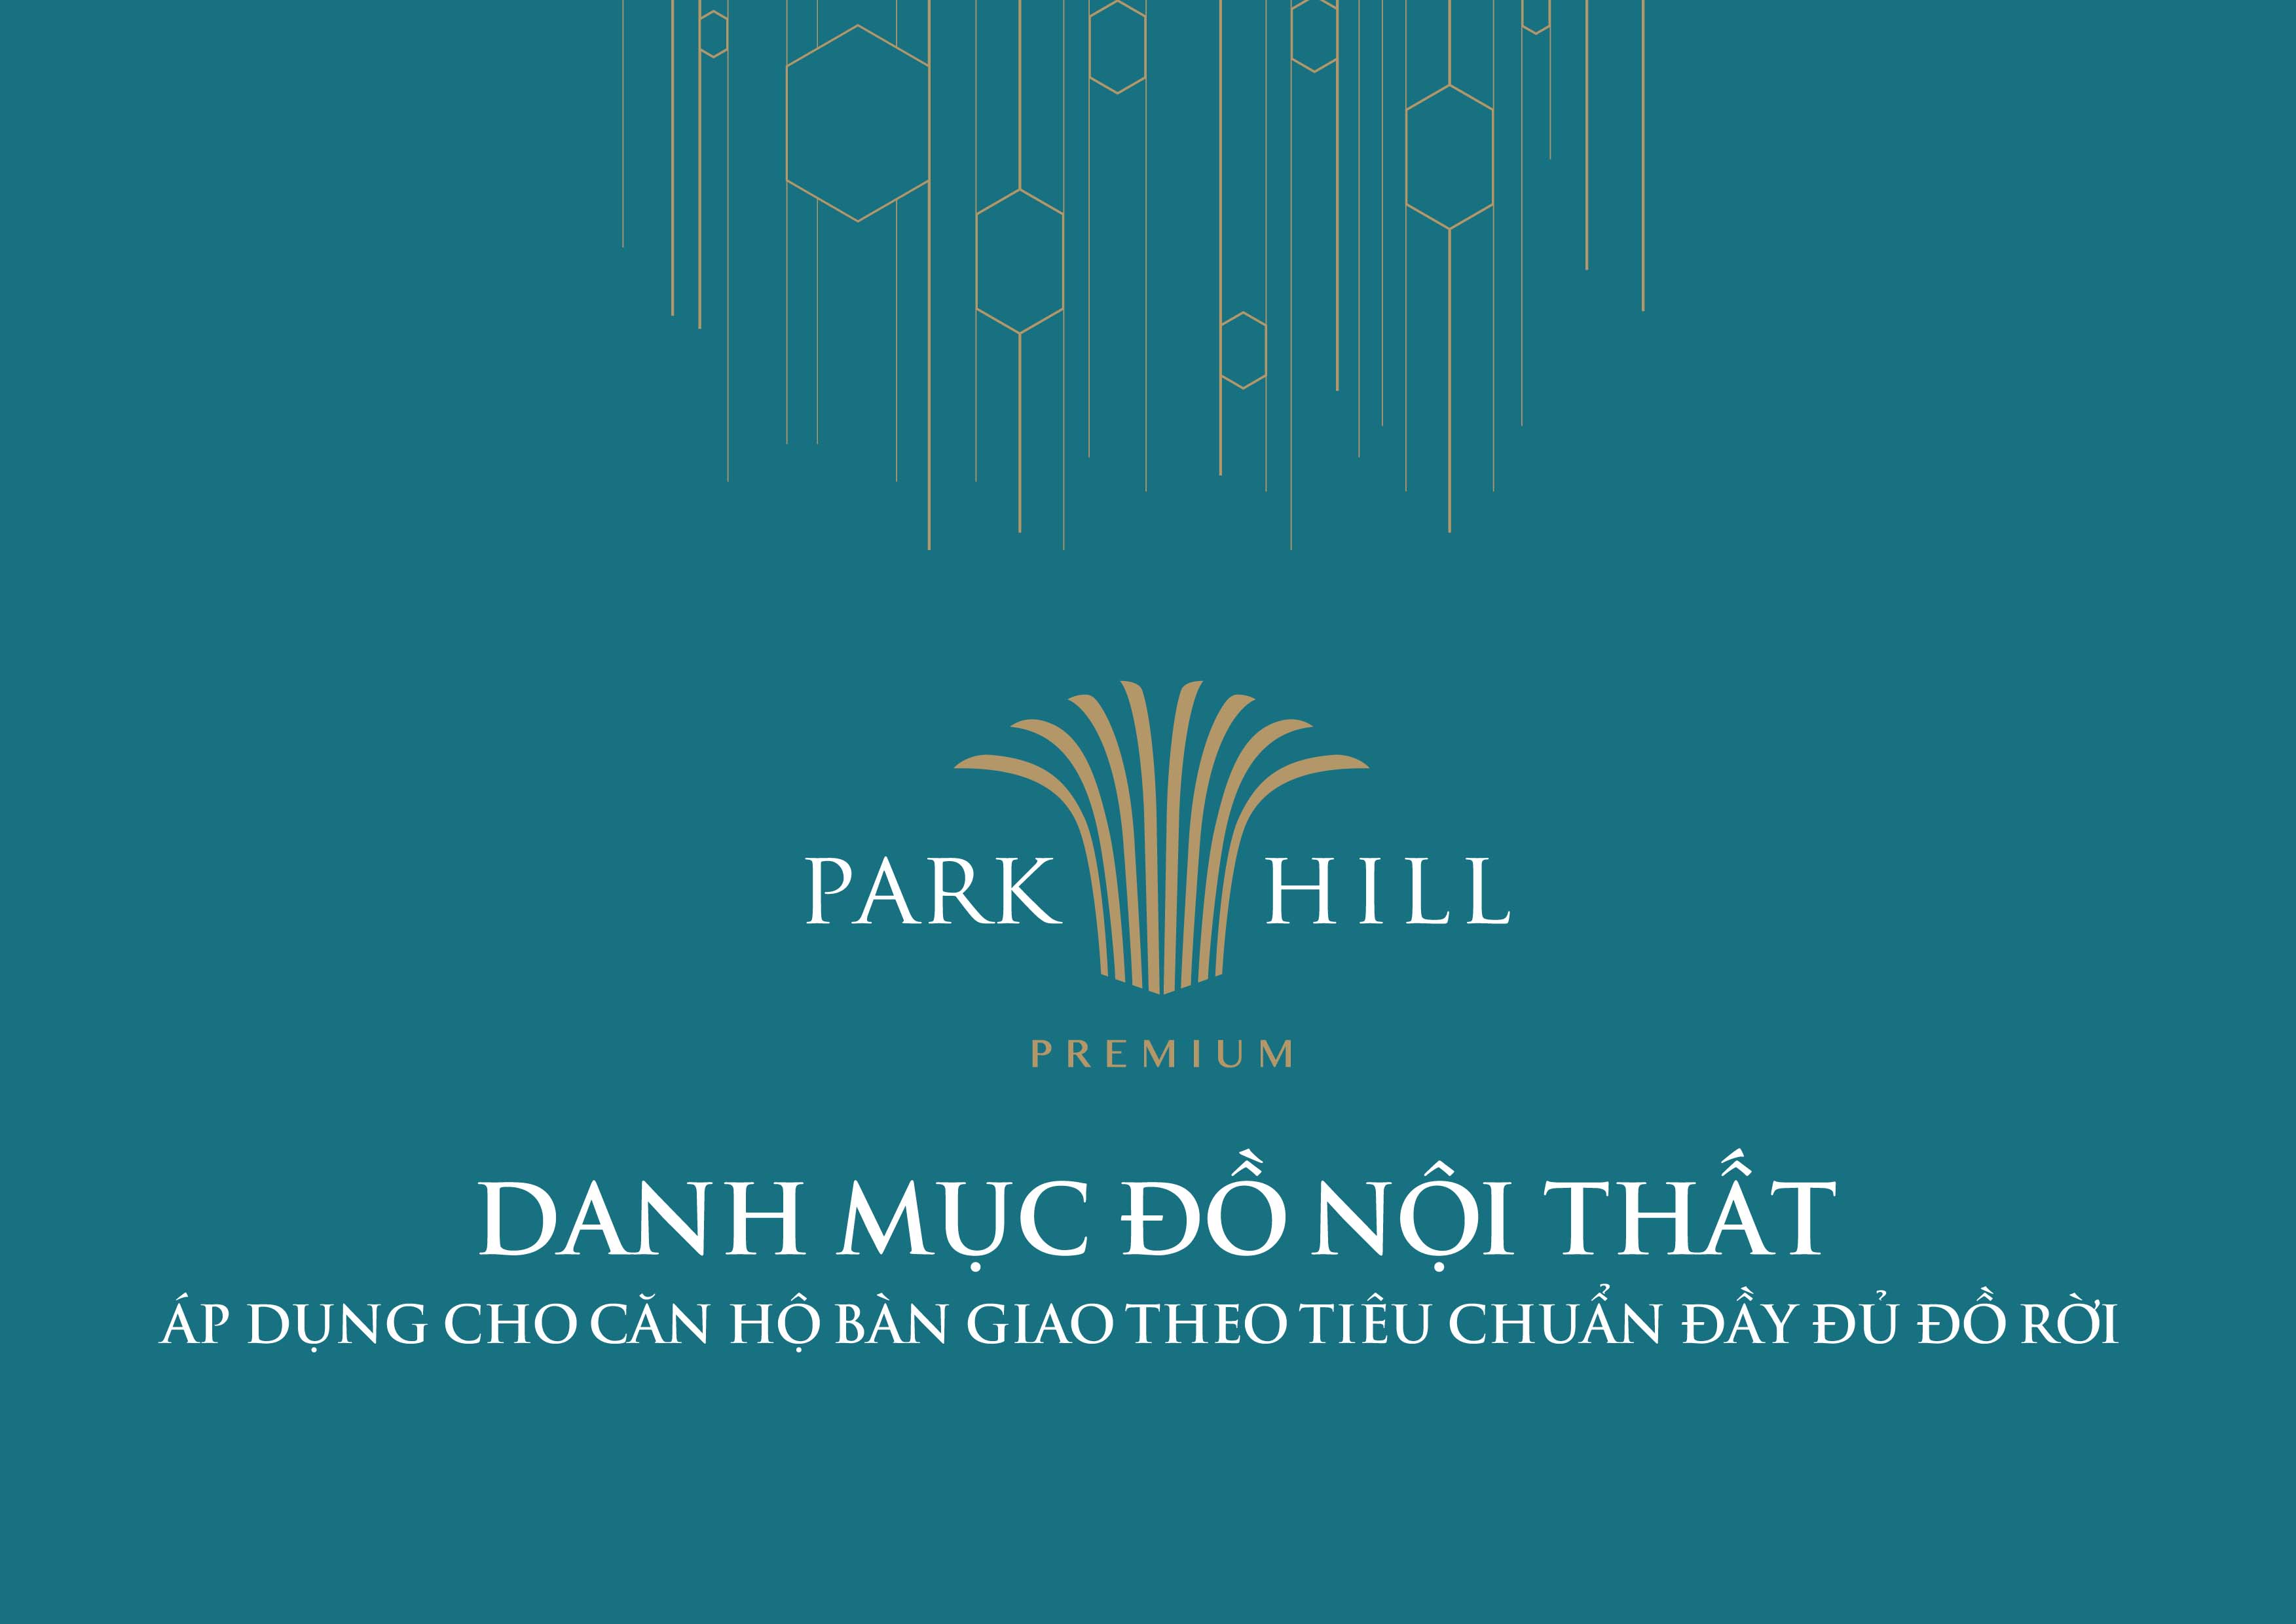 Danh mục đồ nội thất Park 12 Park Hill Premium